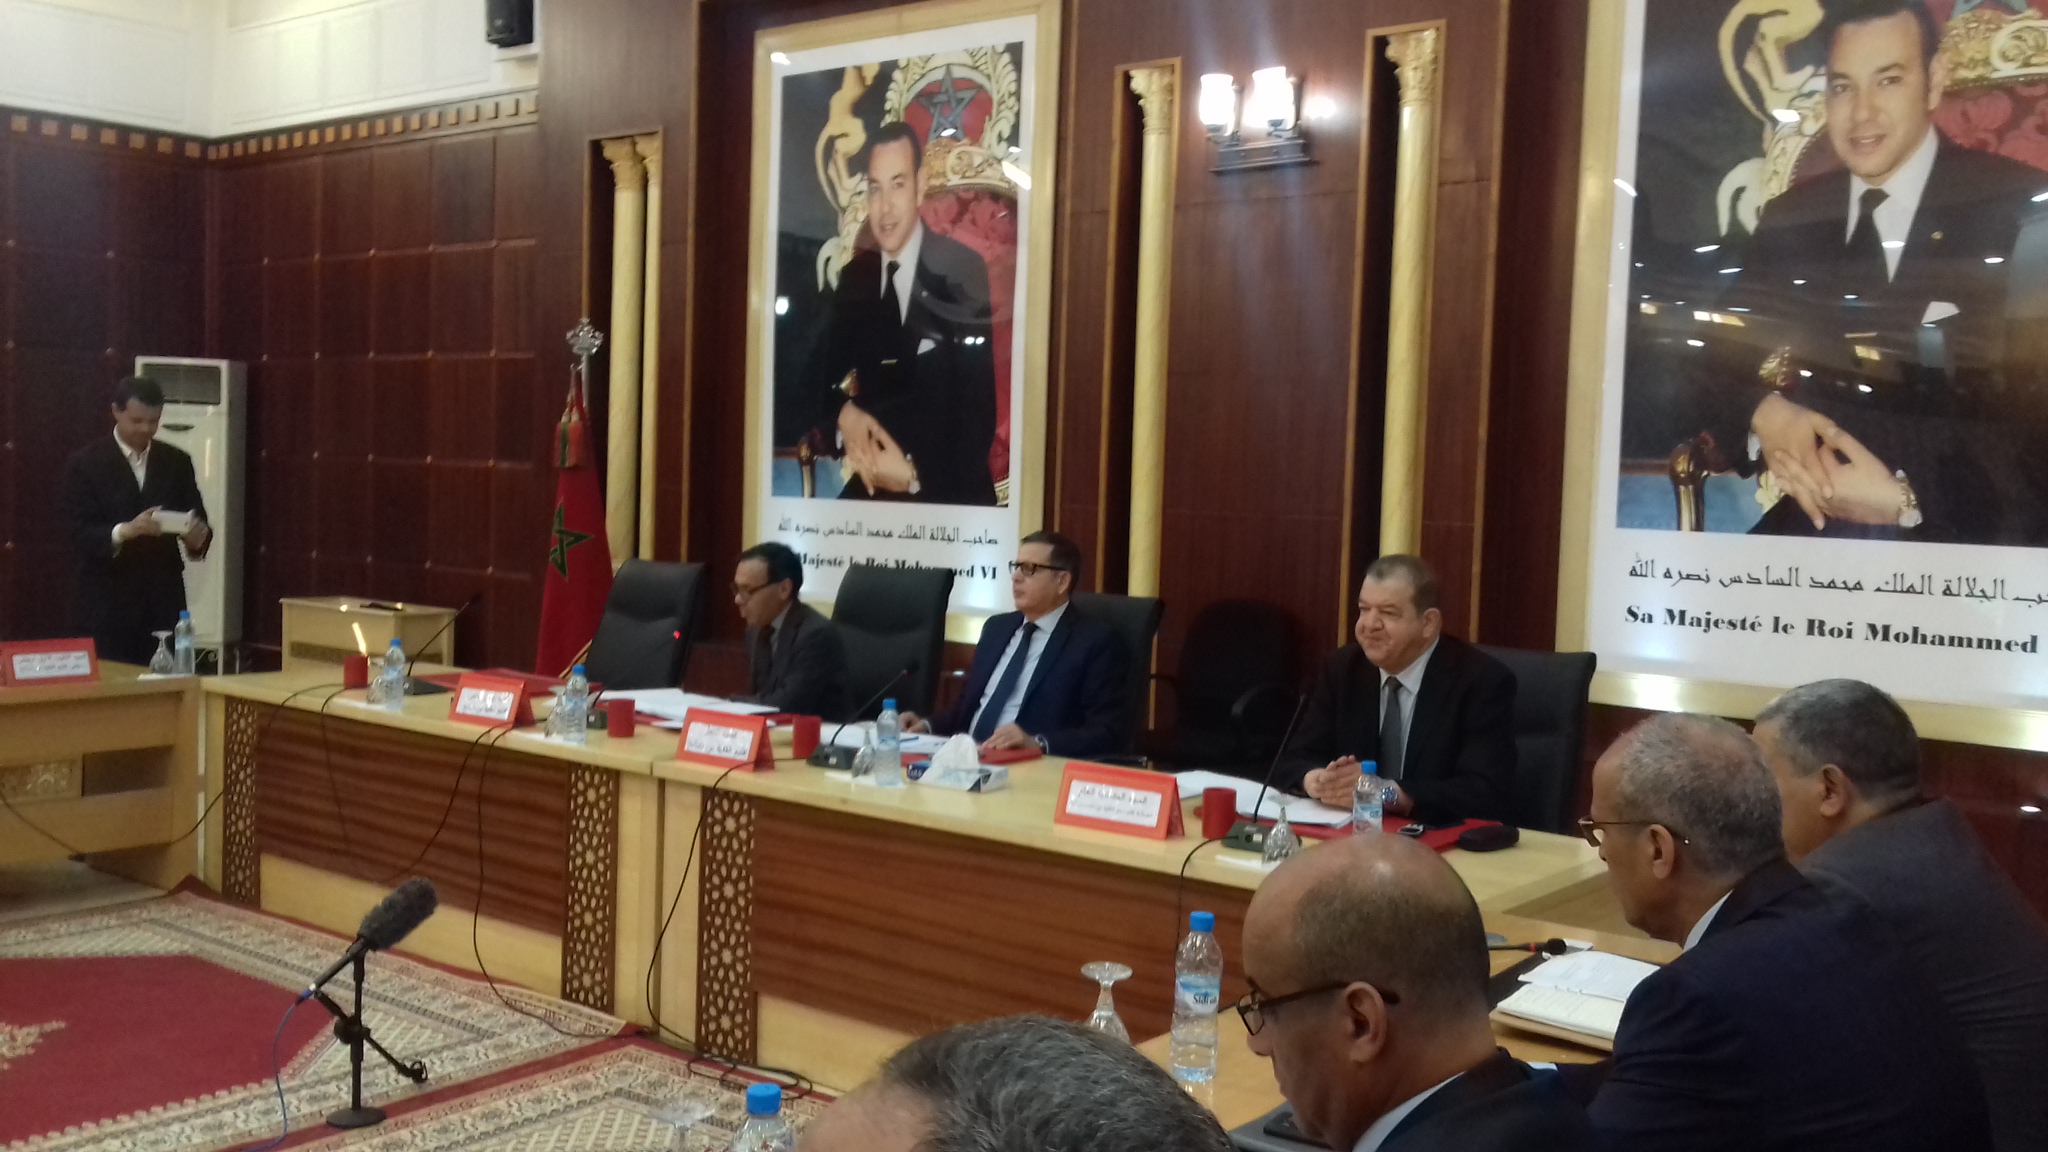 المجلس الإقليمي للفقيه بن صالح يصادق بالإجماع في دورة استثنائية على عدد من مشاريع اتفاقيات الشراكة والتعاون ويرجئ البث في طلبات الدعم ، لكثرتها ، من أجل الدراسة